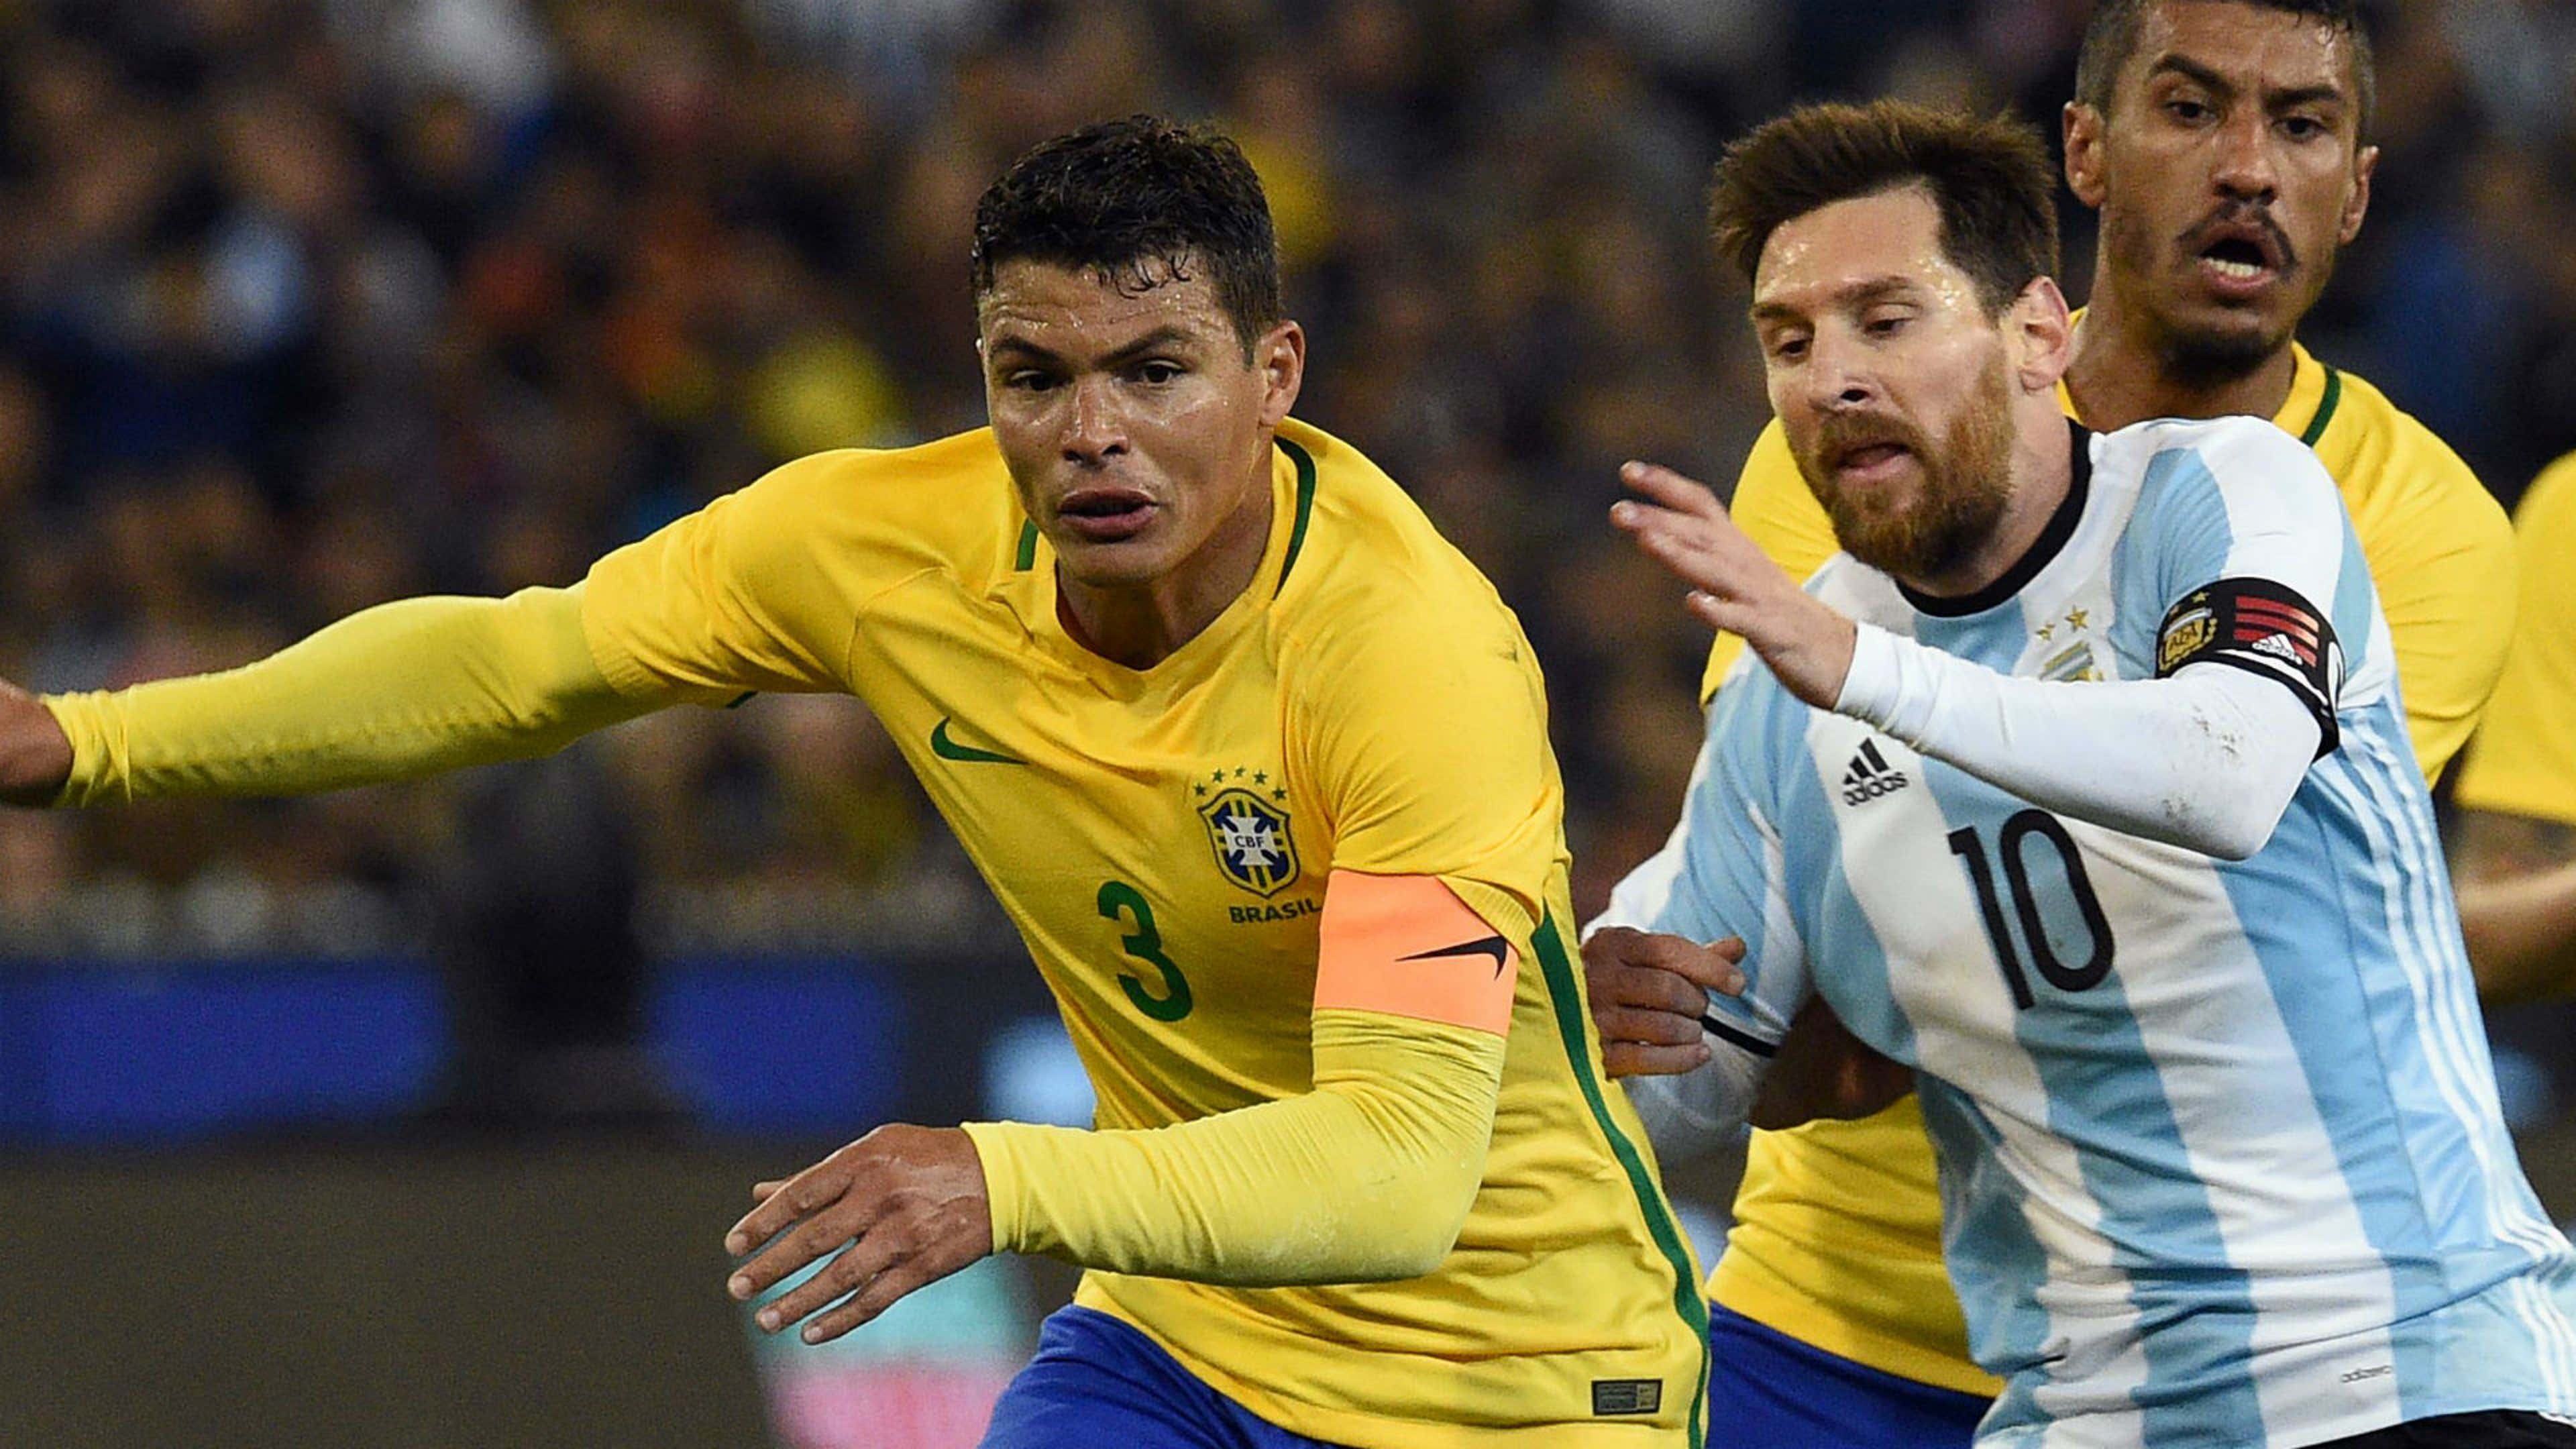 Onde vai passar Brasil vs Argentina?